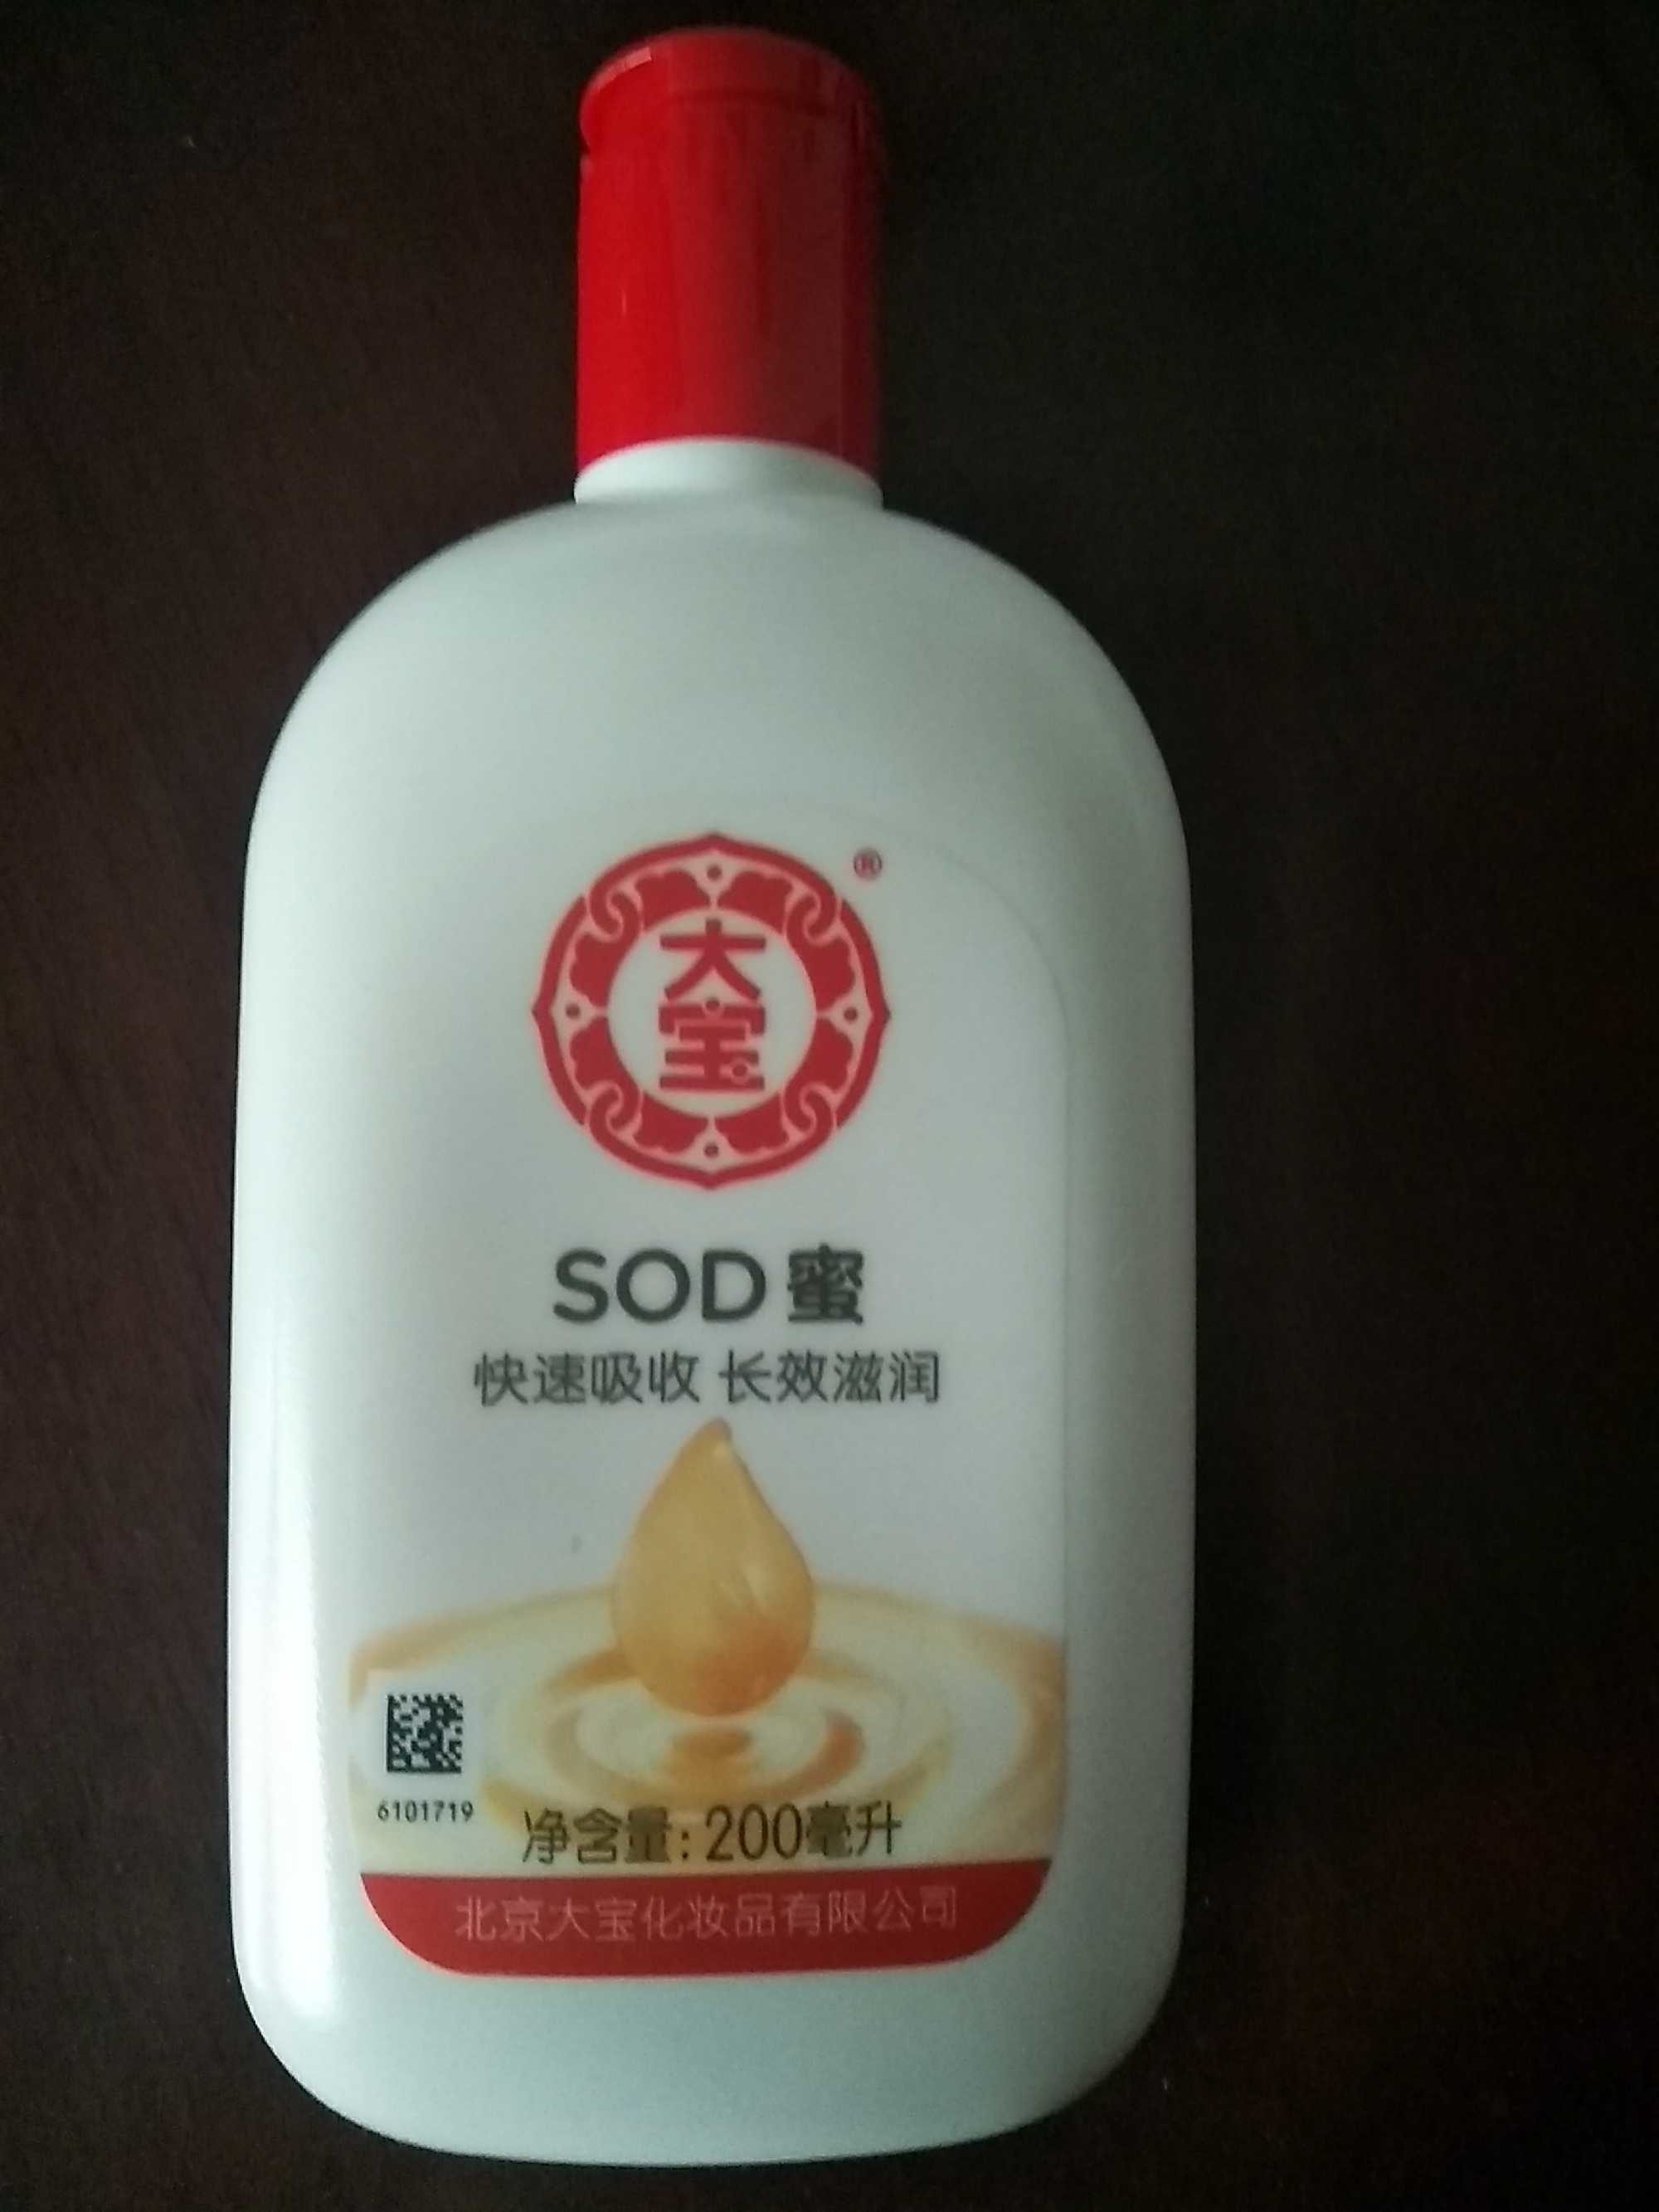 SOD蜜 - Produit - fr